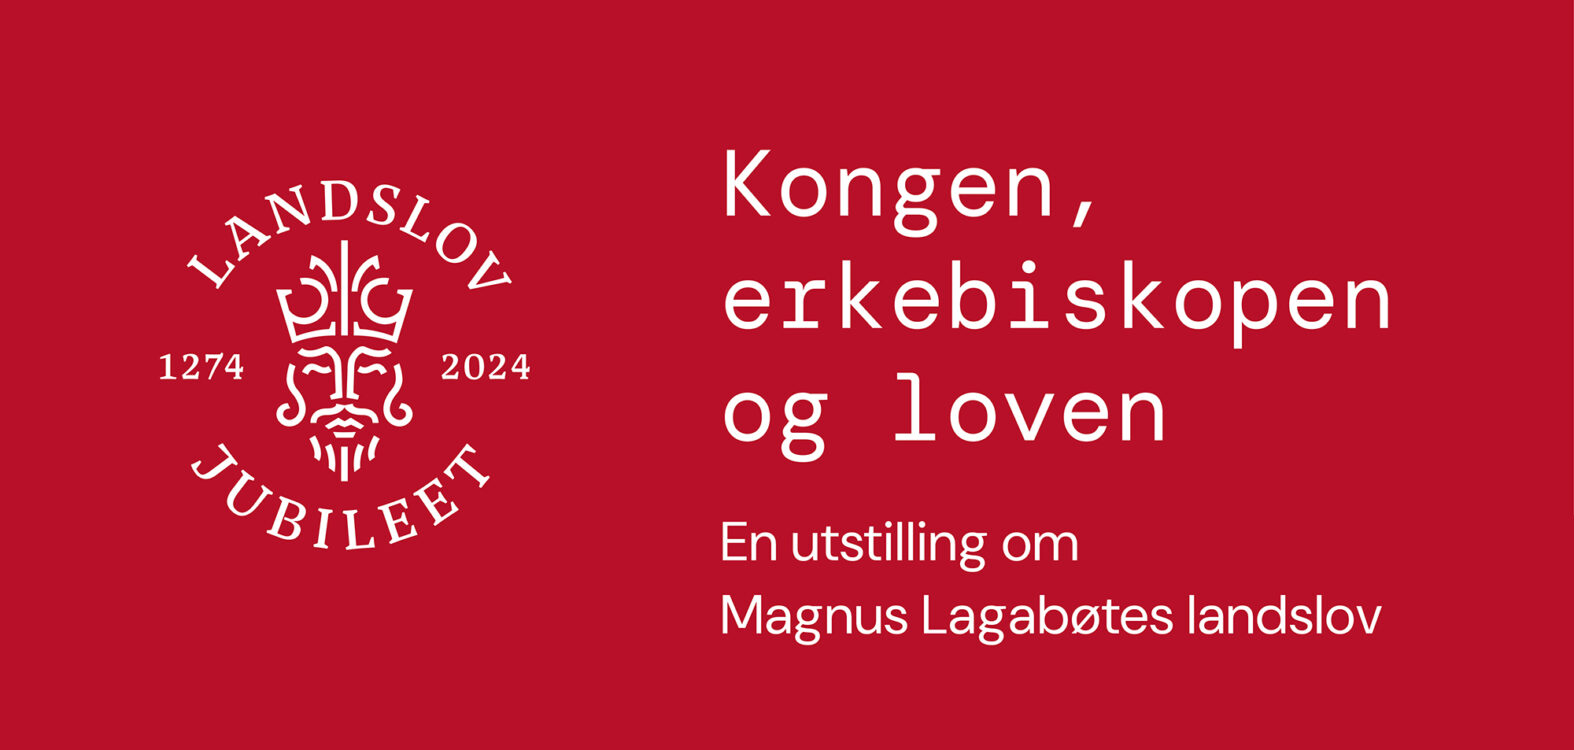 Rød tekstplakat med logoen for landslov jubileet 1274-2024, samt teksten: Kongen, erkebiskopen og loven. En utstilling om Magnus Lagabøtes landslov.